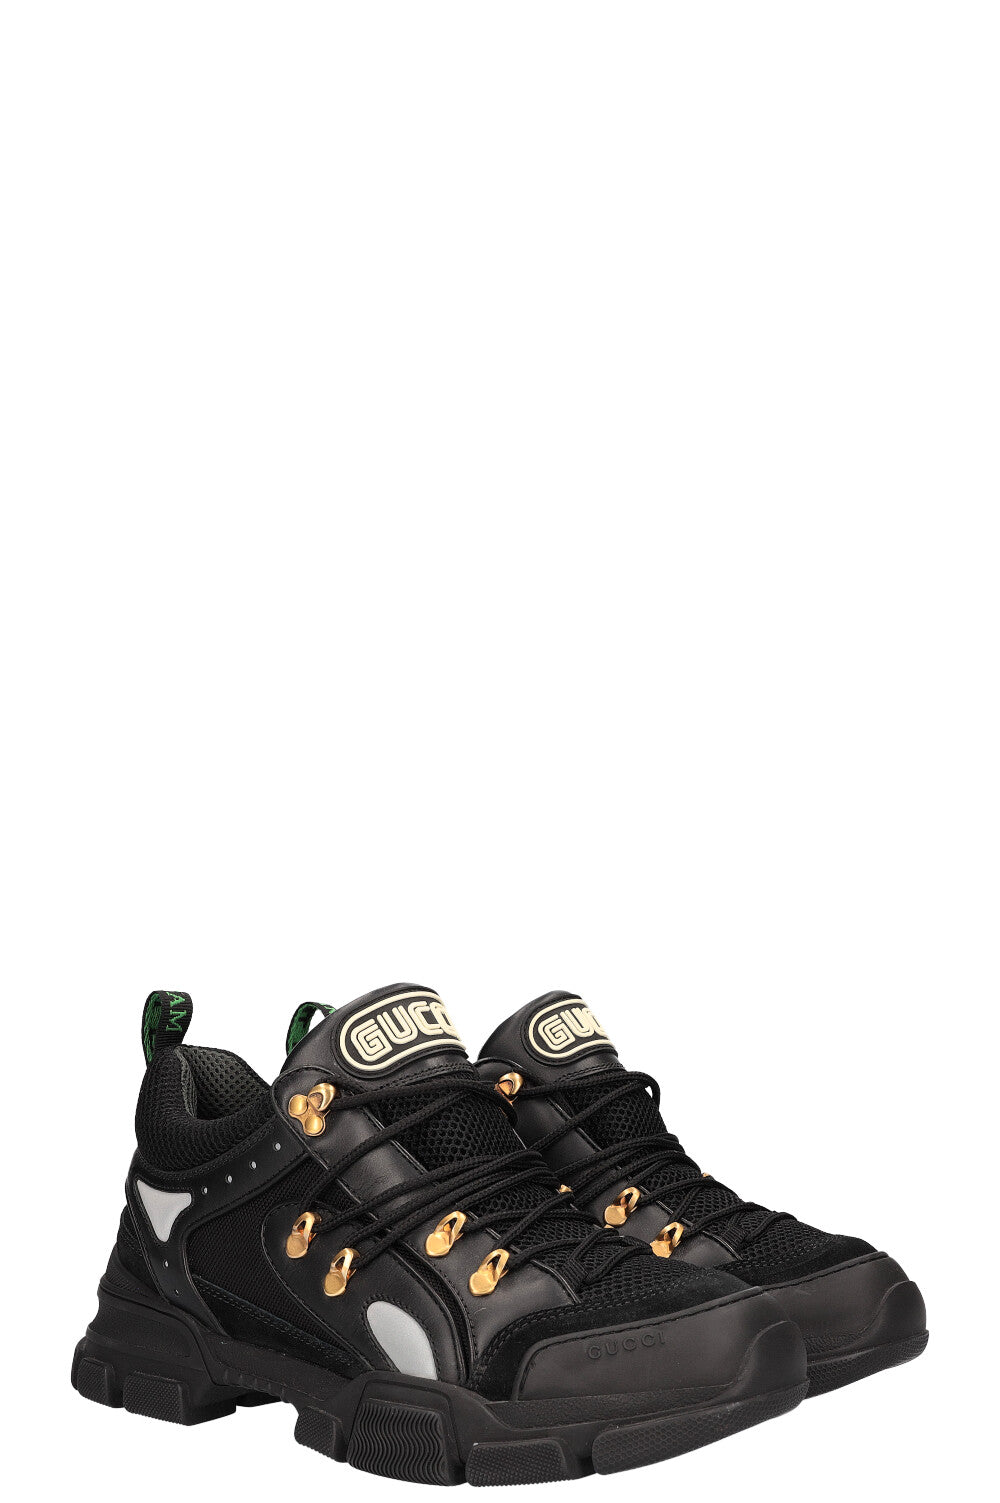 Gucci Flashtreck Sneakers Black